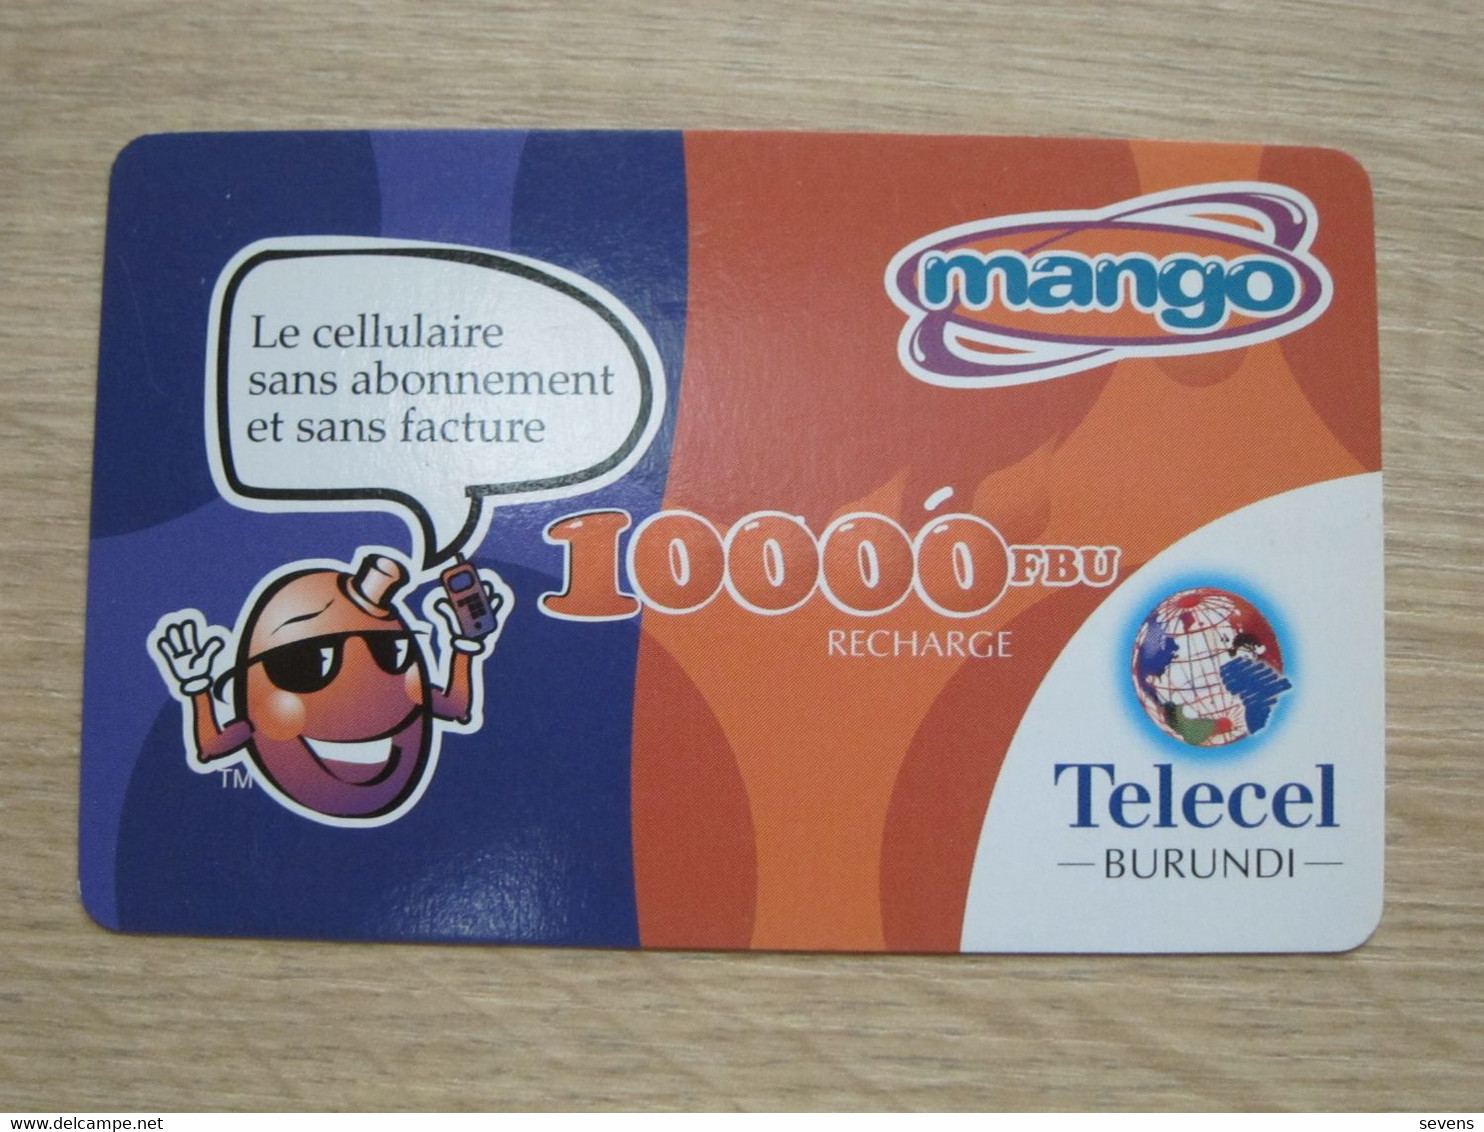 Telecel Burundi Recharge Card,used - Burundi